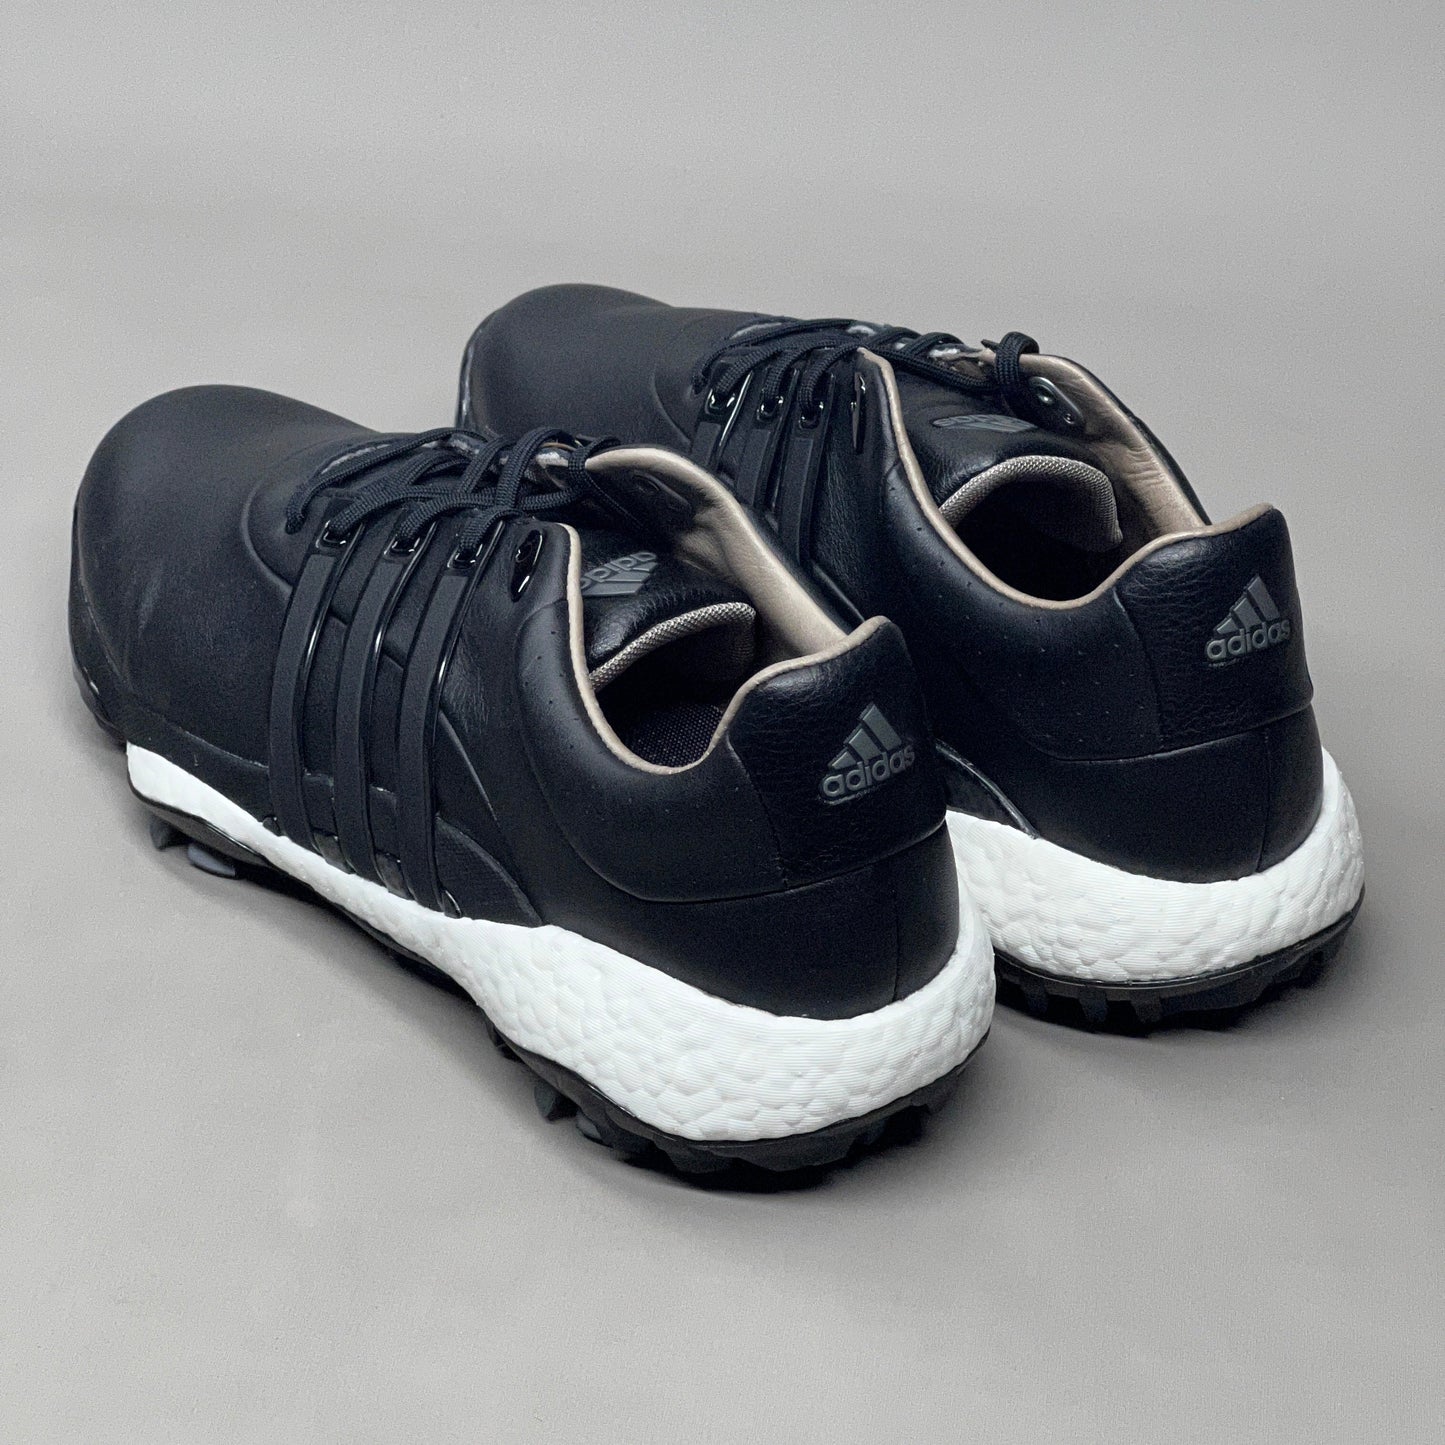 ADIDAS Golf Shoes TOUR360 22 Leather Men's Sz 10 Black / Iron Metallic GZ3158 (New)